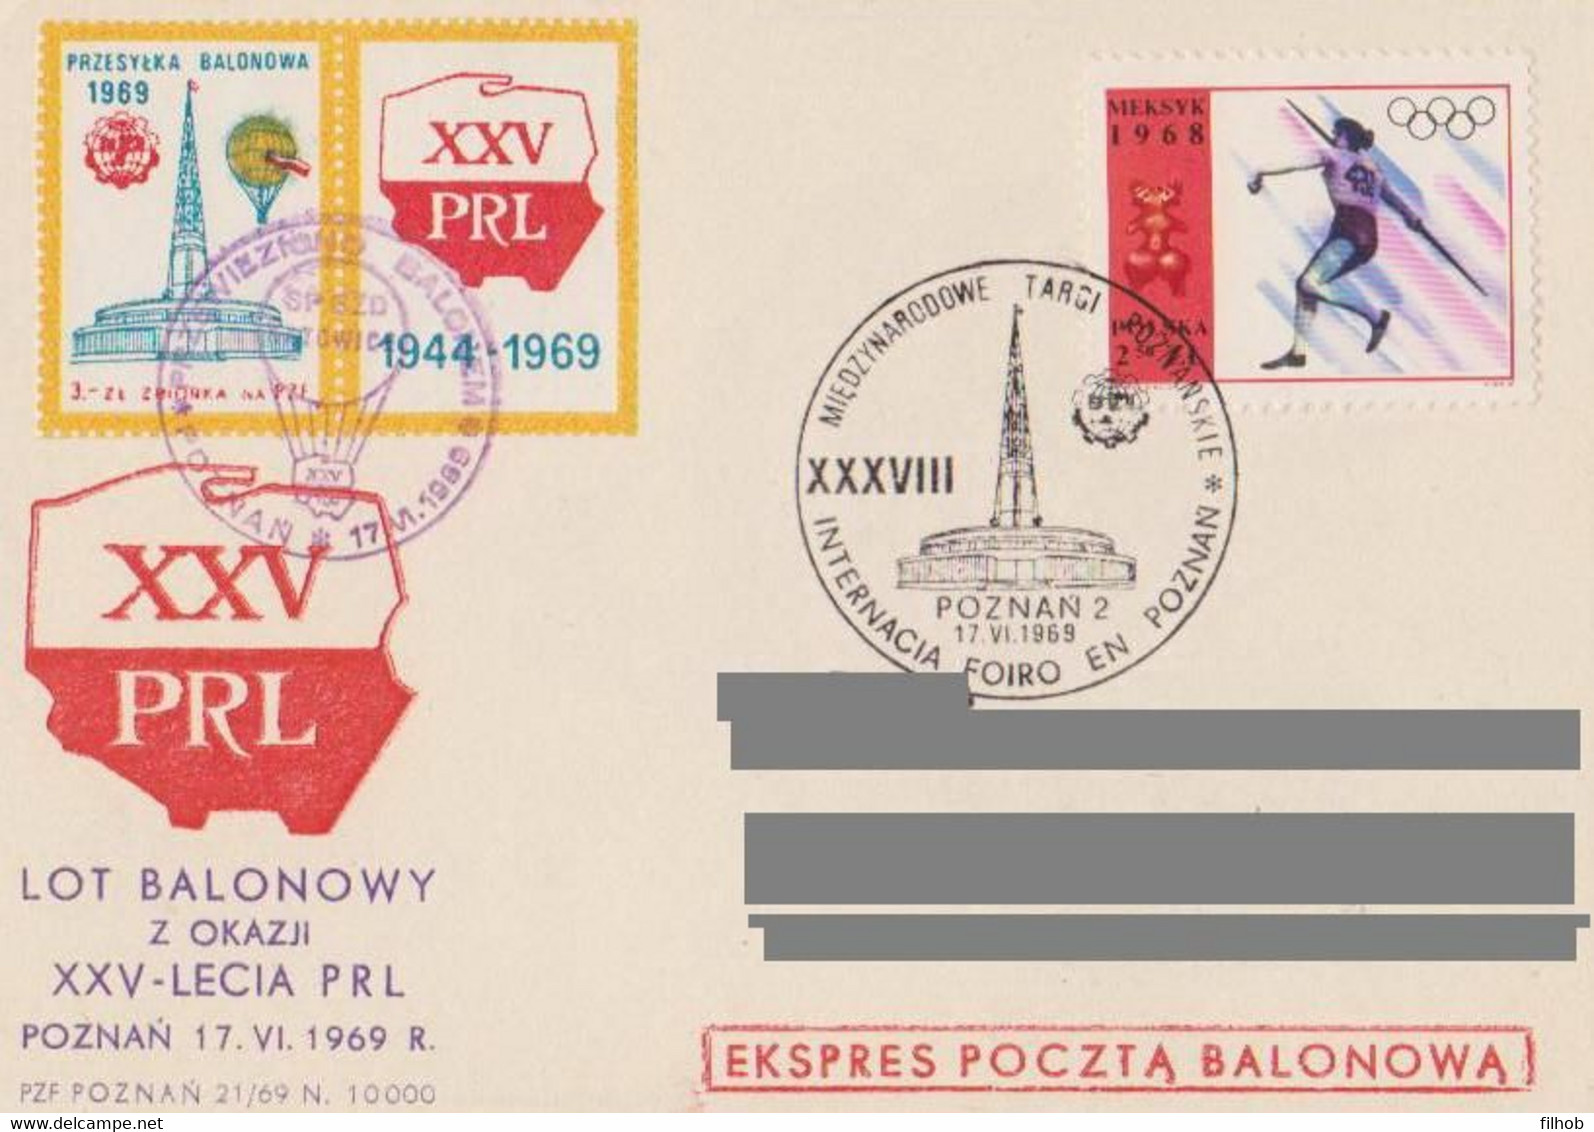 Poland Post - Balloon PBA.1969.poz.kat.A.02: Flight XXX Y. PRL KATOWICE - Ballonpost